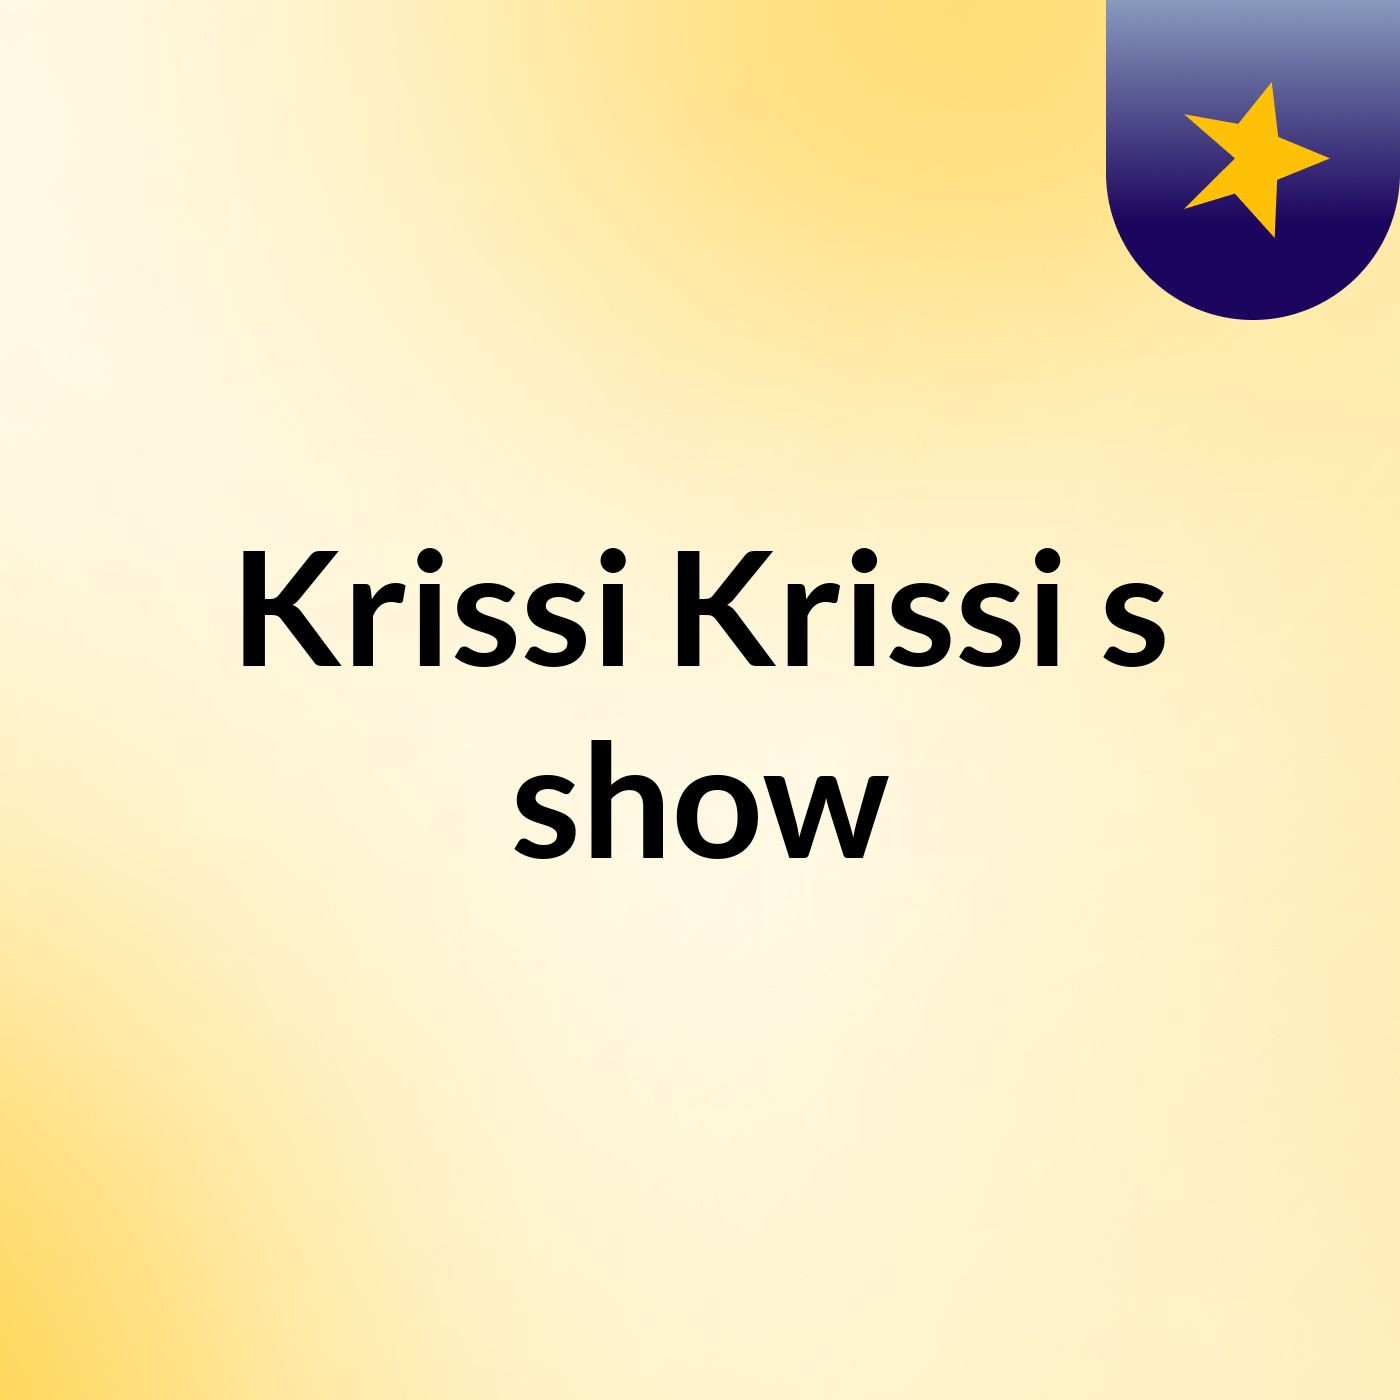 Krissi Krissi's show